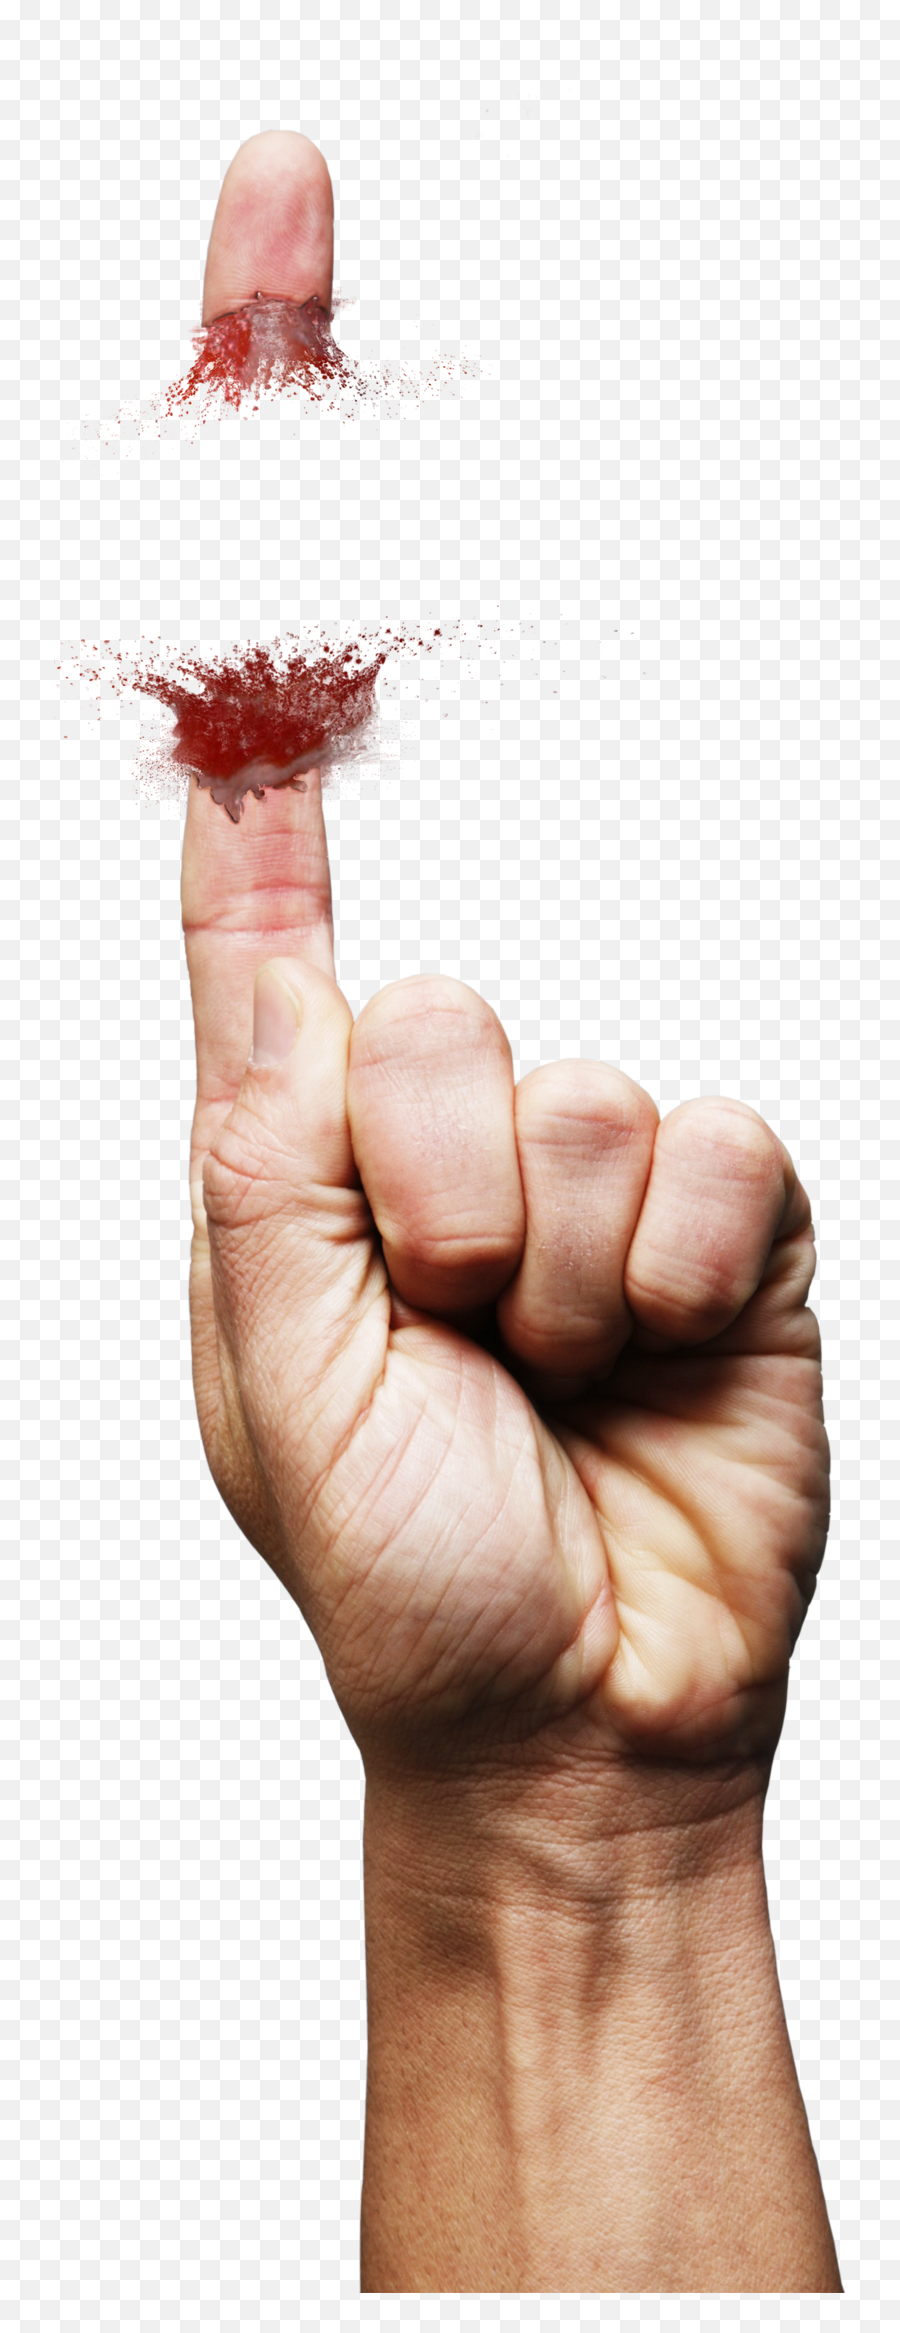 Hand Finger Blood Handgun Gun Shot Sticker By 4asno4i - Fist Emoji,Blood Hand Emojis Png